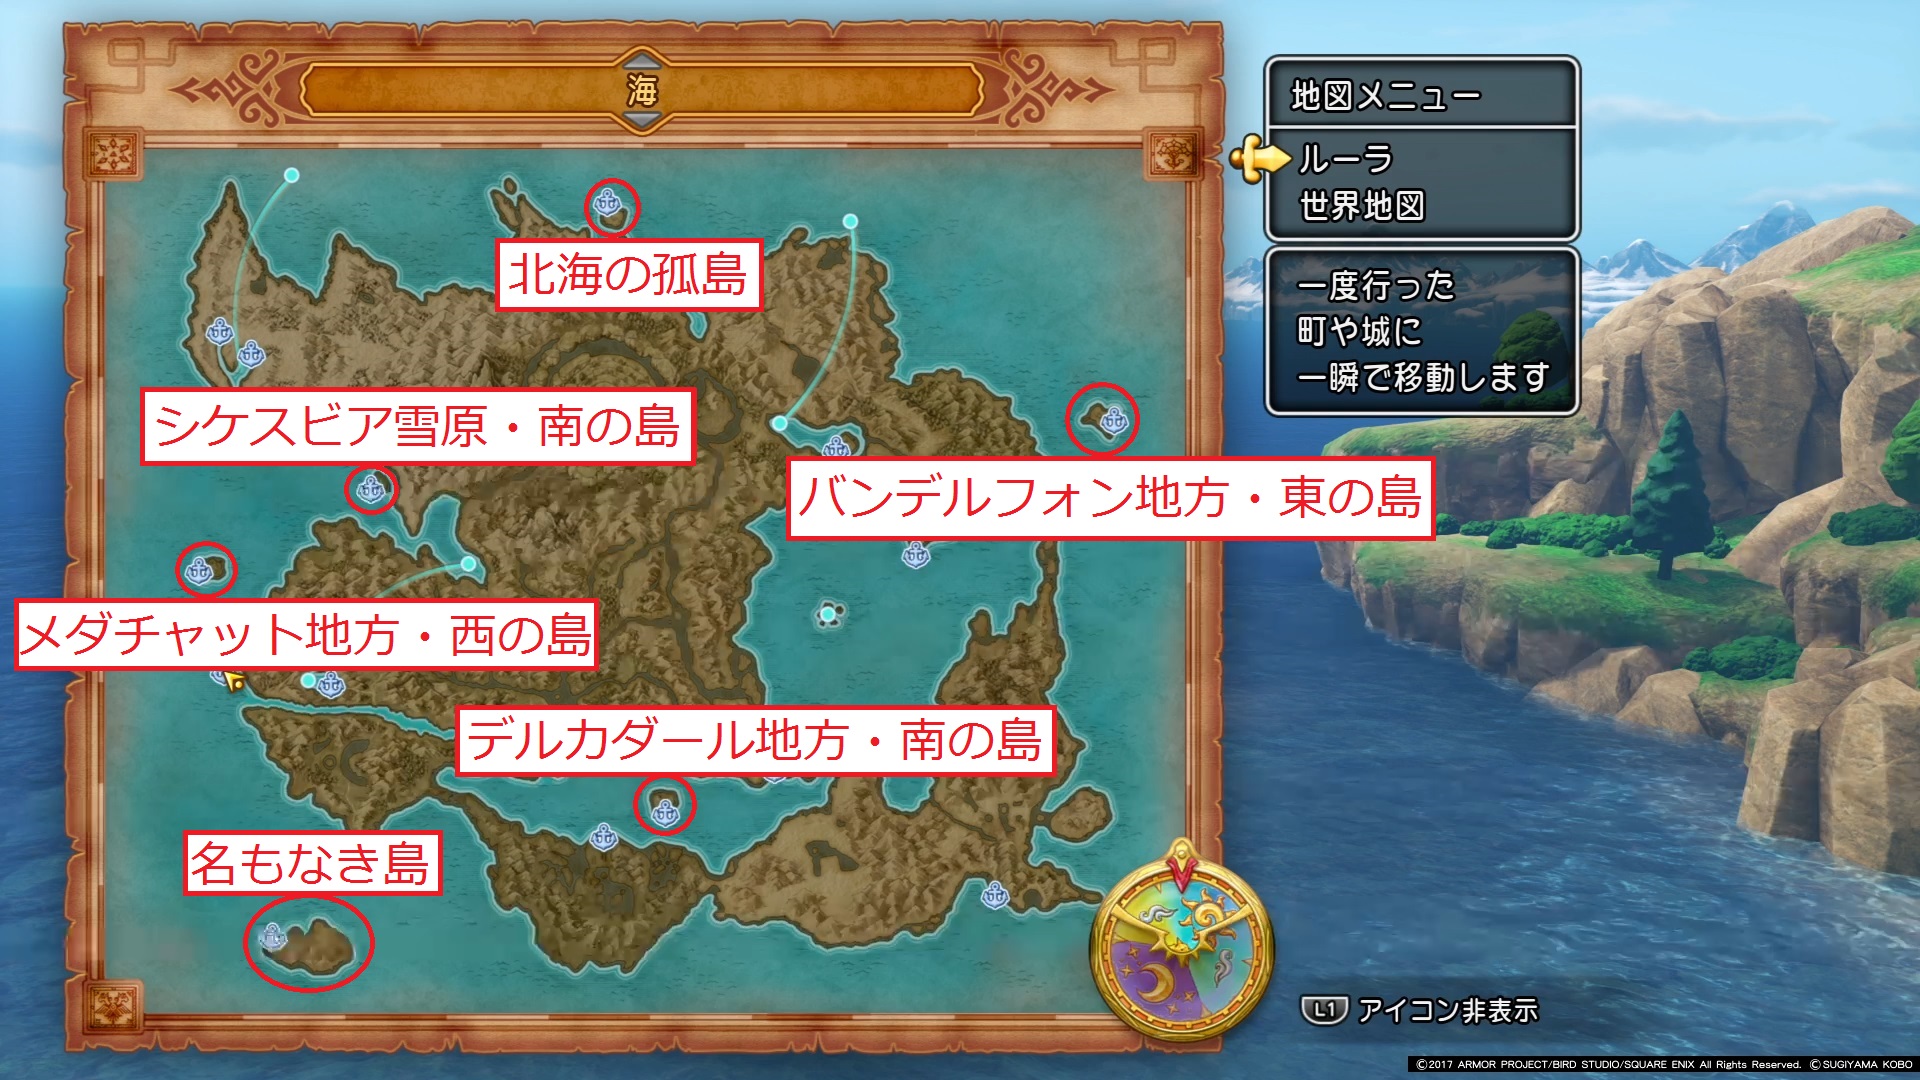 ドラクエ11 攻略日誌26 6つの離島 島の位置が分かる画像あり ゲーム考察